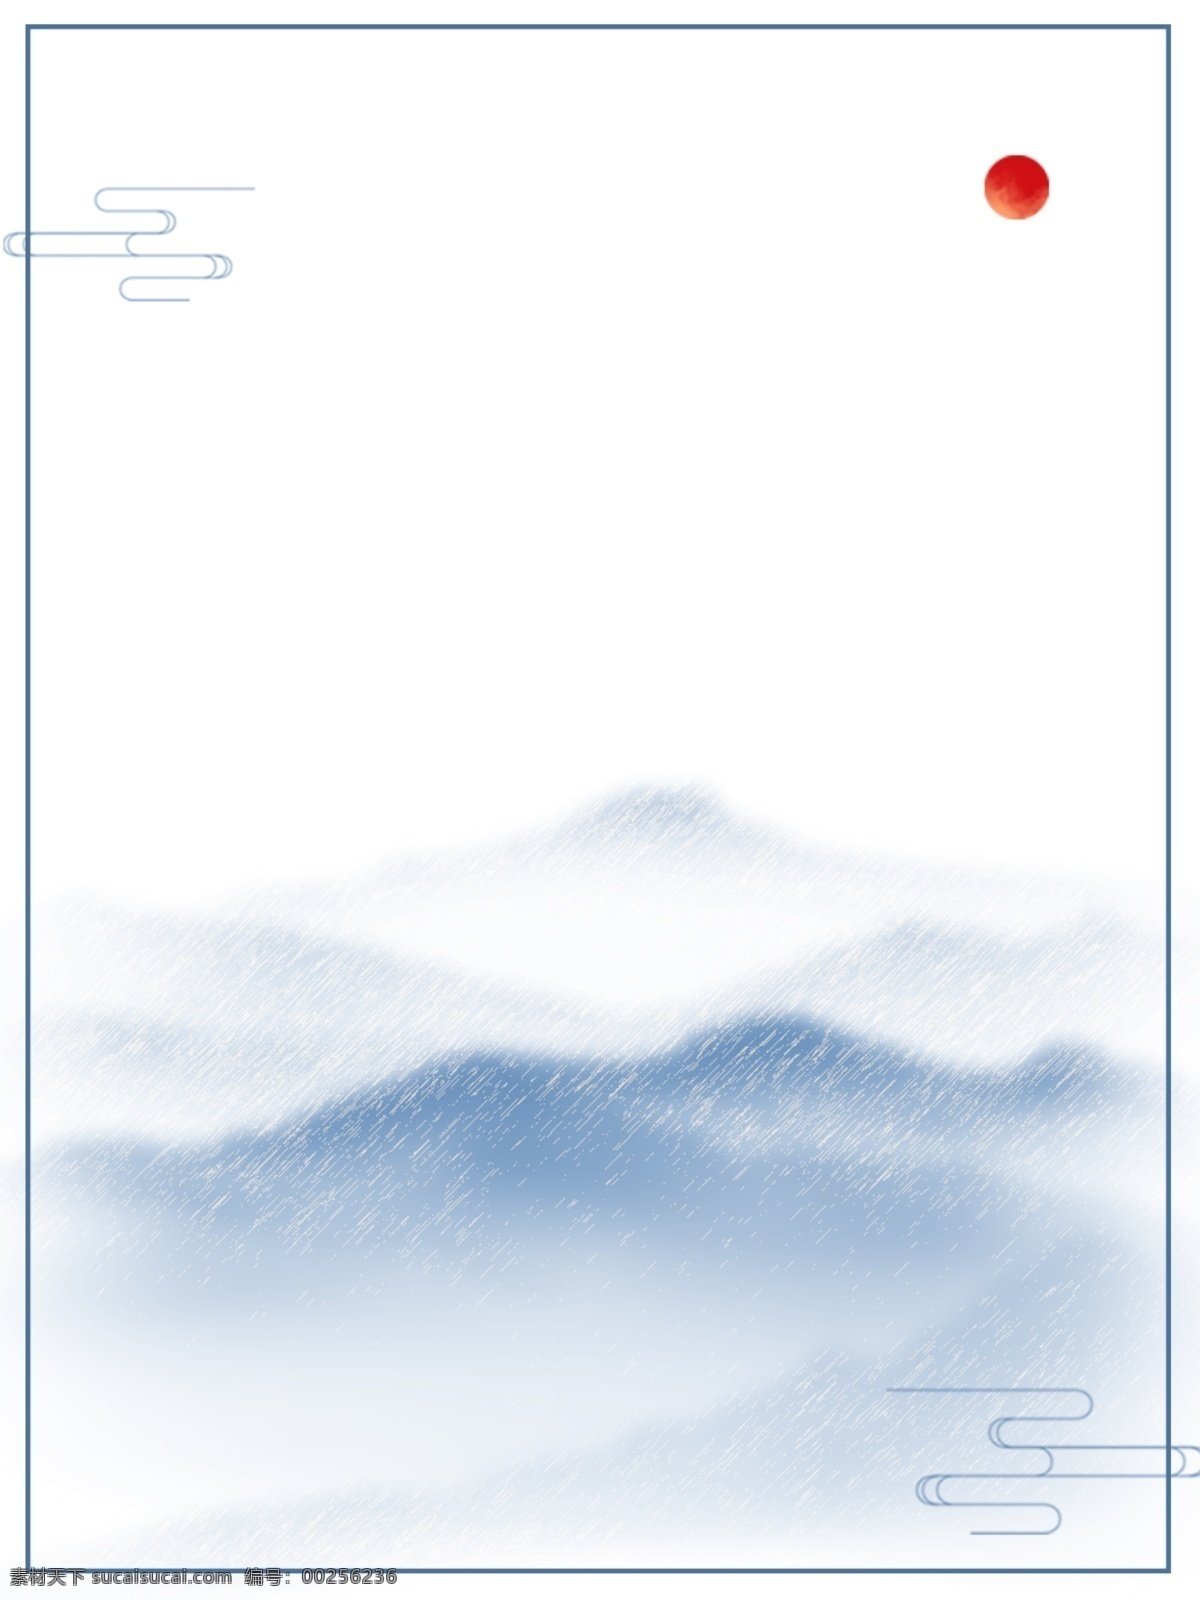 原创 中国 风 手绘 清新 山水 古典 简约 背景 中国风 自然 优美